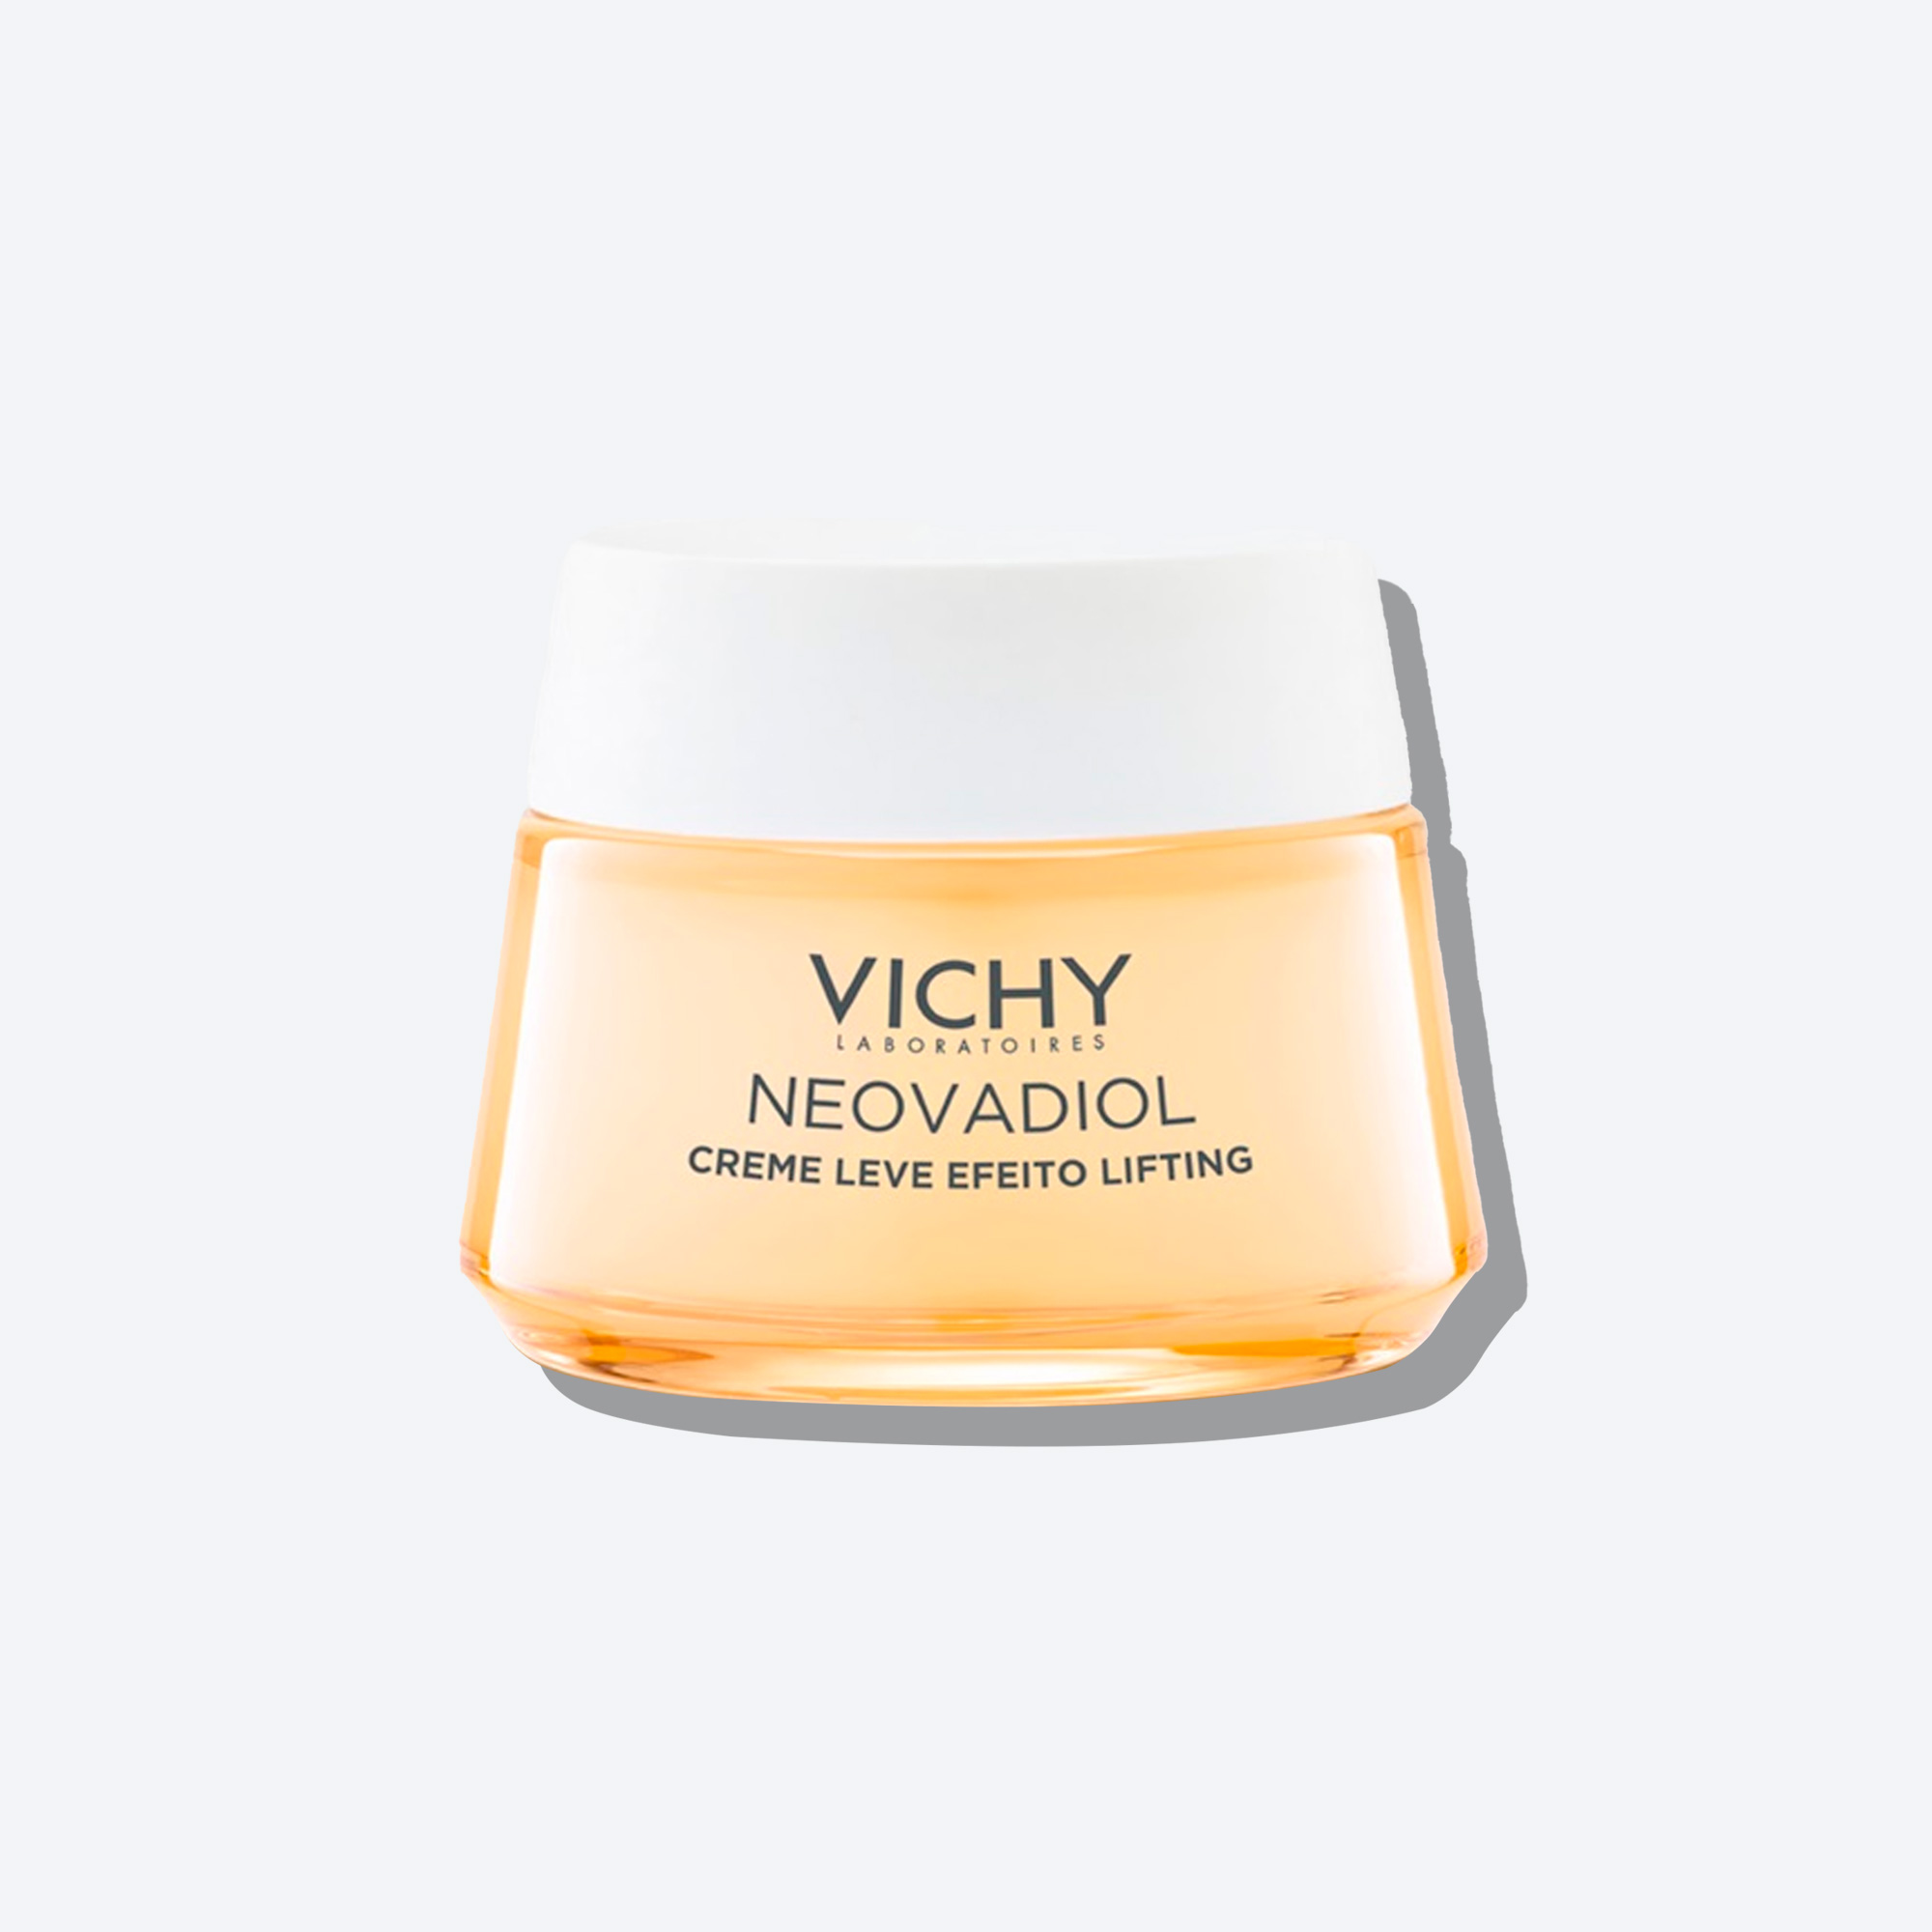 Creme Leve Efeito Lifting Vichy Neovadiol Menopausa - 50g | Packshot